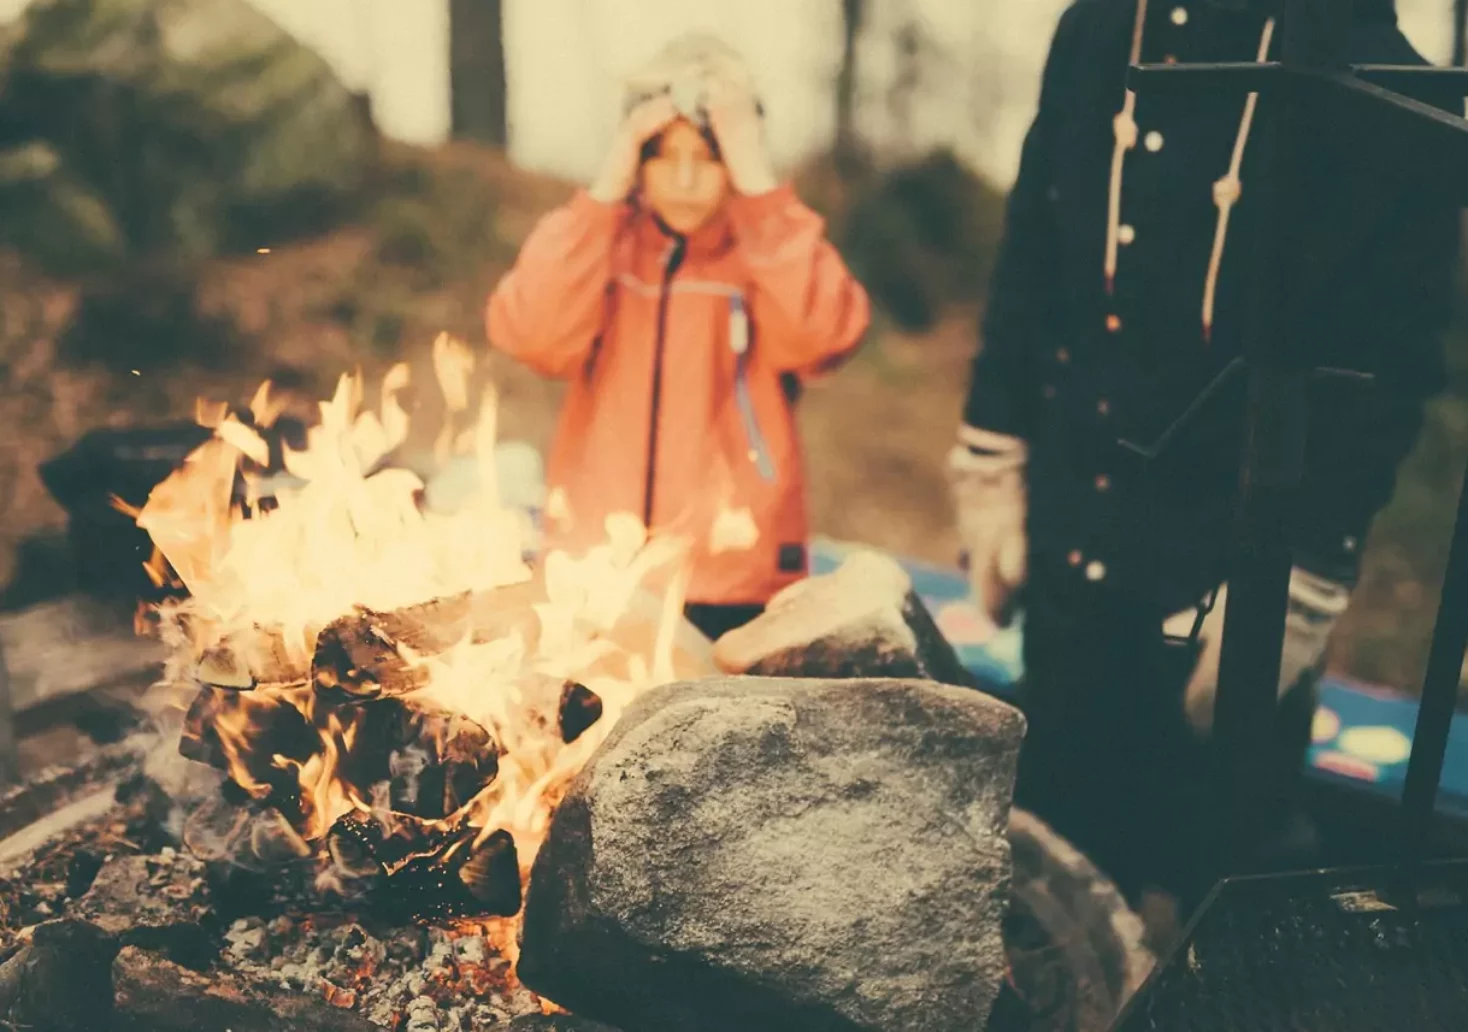 Bild auf 5min.at zeigt ein Kind bei einem Lagerfeuer.